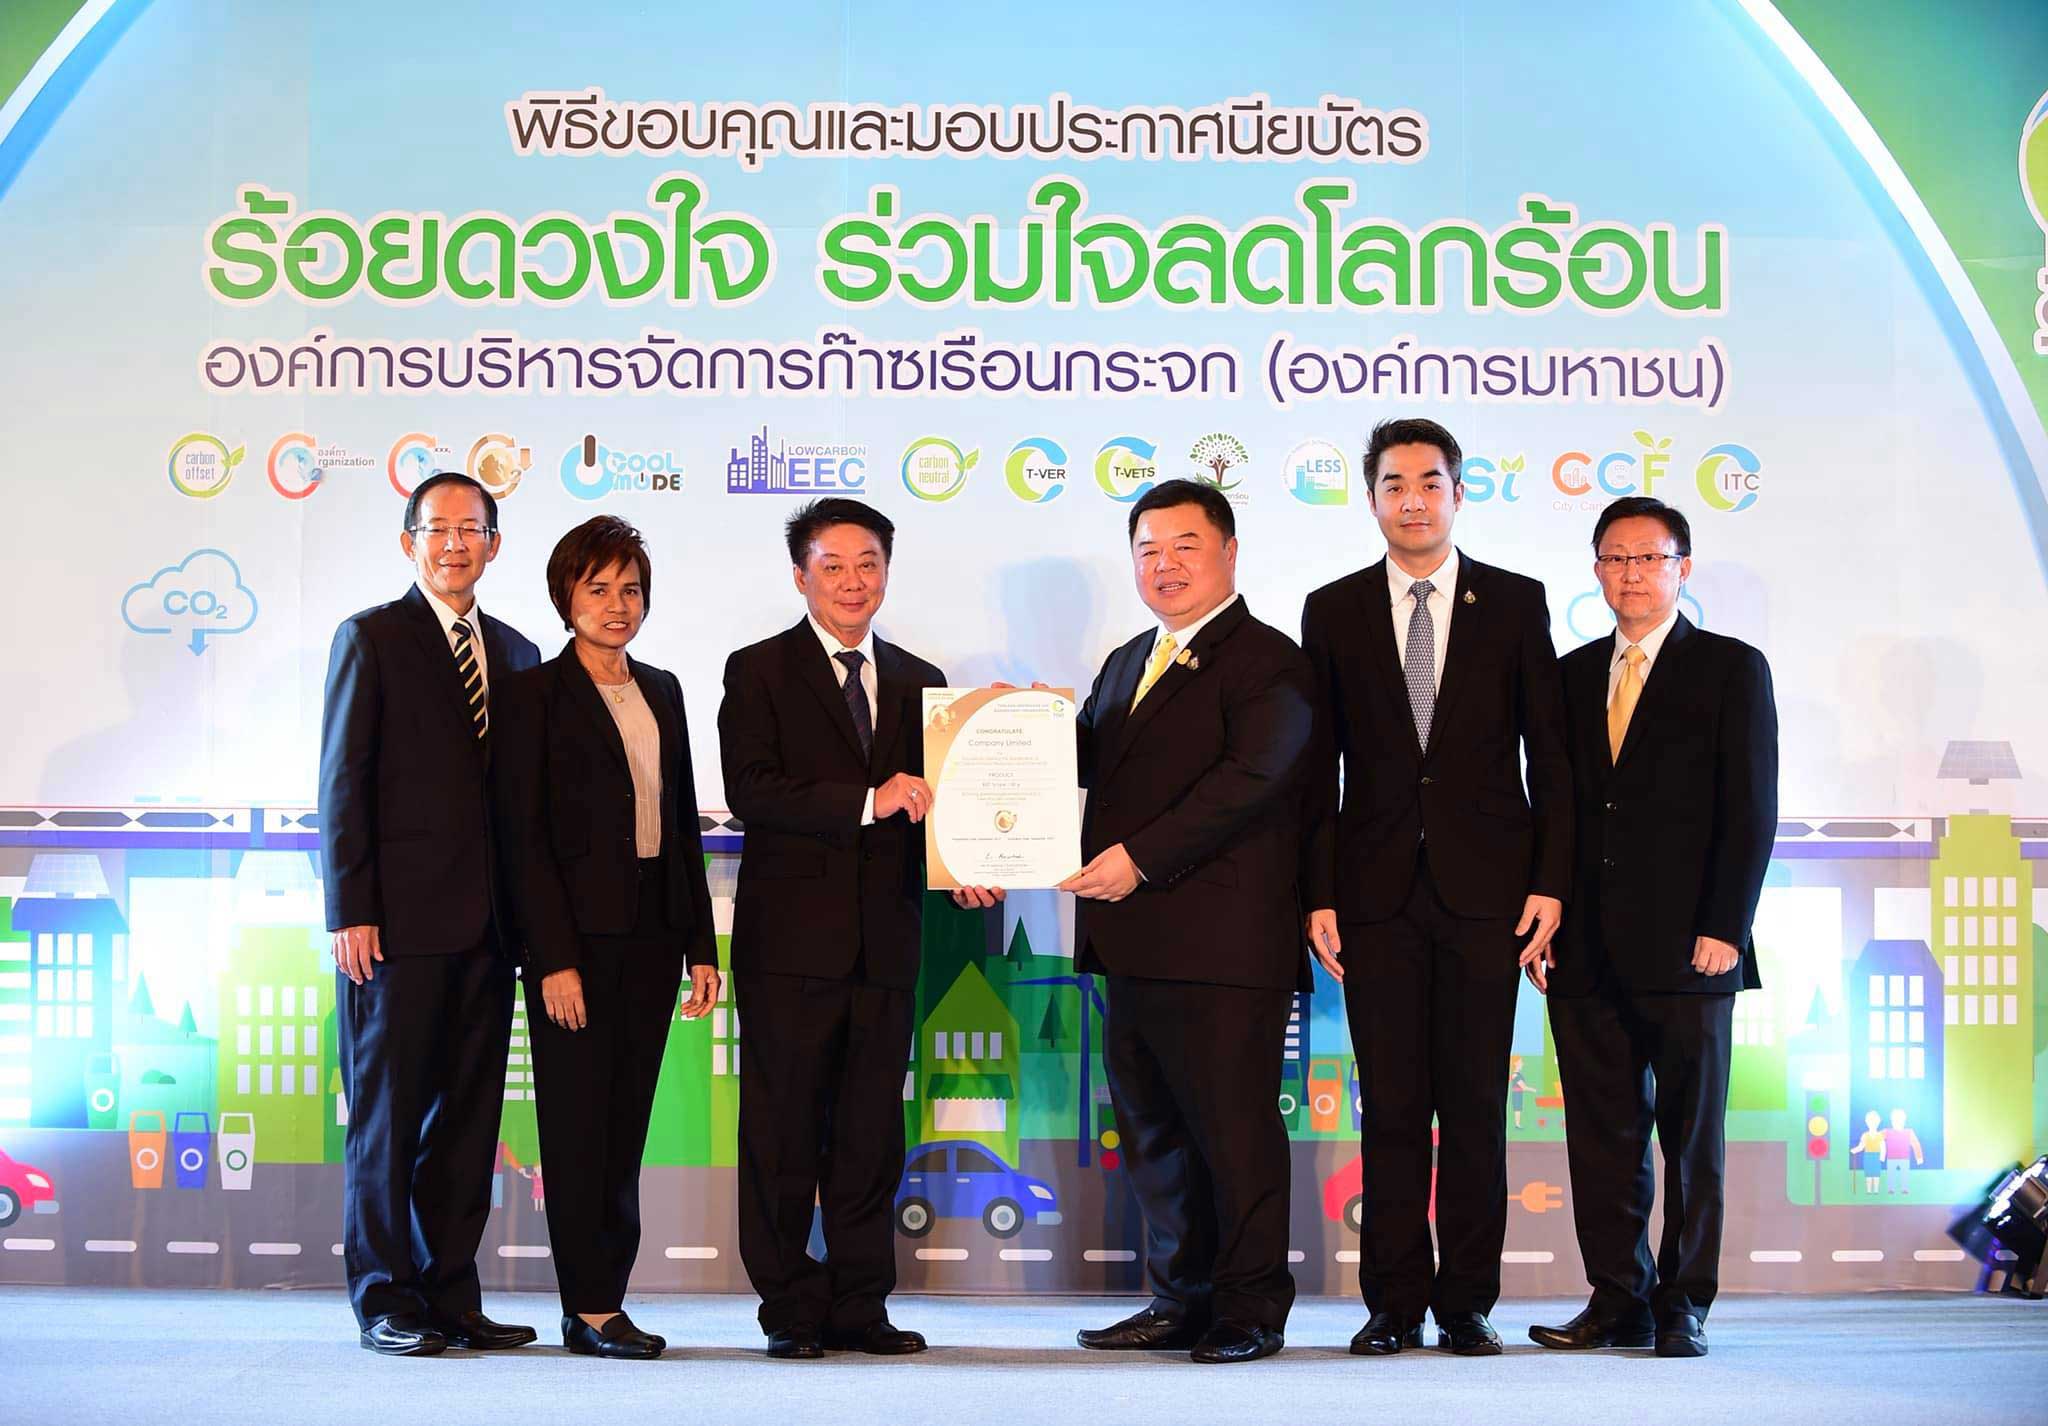 อบก. มอบฉลากคาร์บอนฟุตพริ้นท์ กว่า 600 รายการให้กับซีพีเอฟ กลุ่มผลิตภัณฑ์เป็ดได้รับฉลากเป็นรายแรกของประเทศไทย